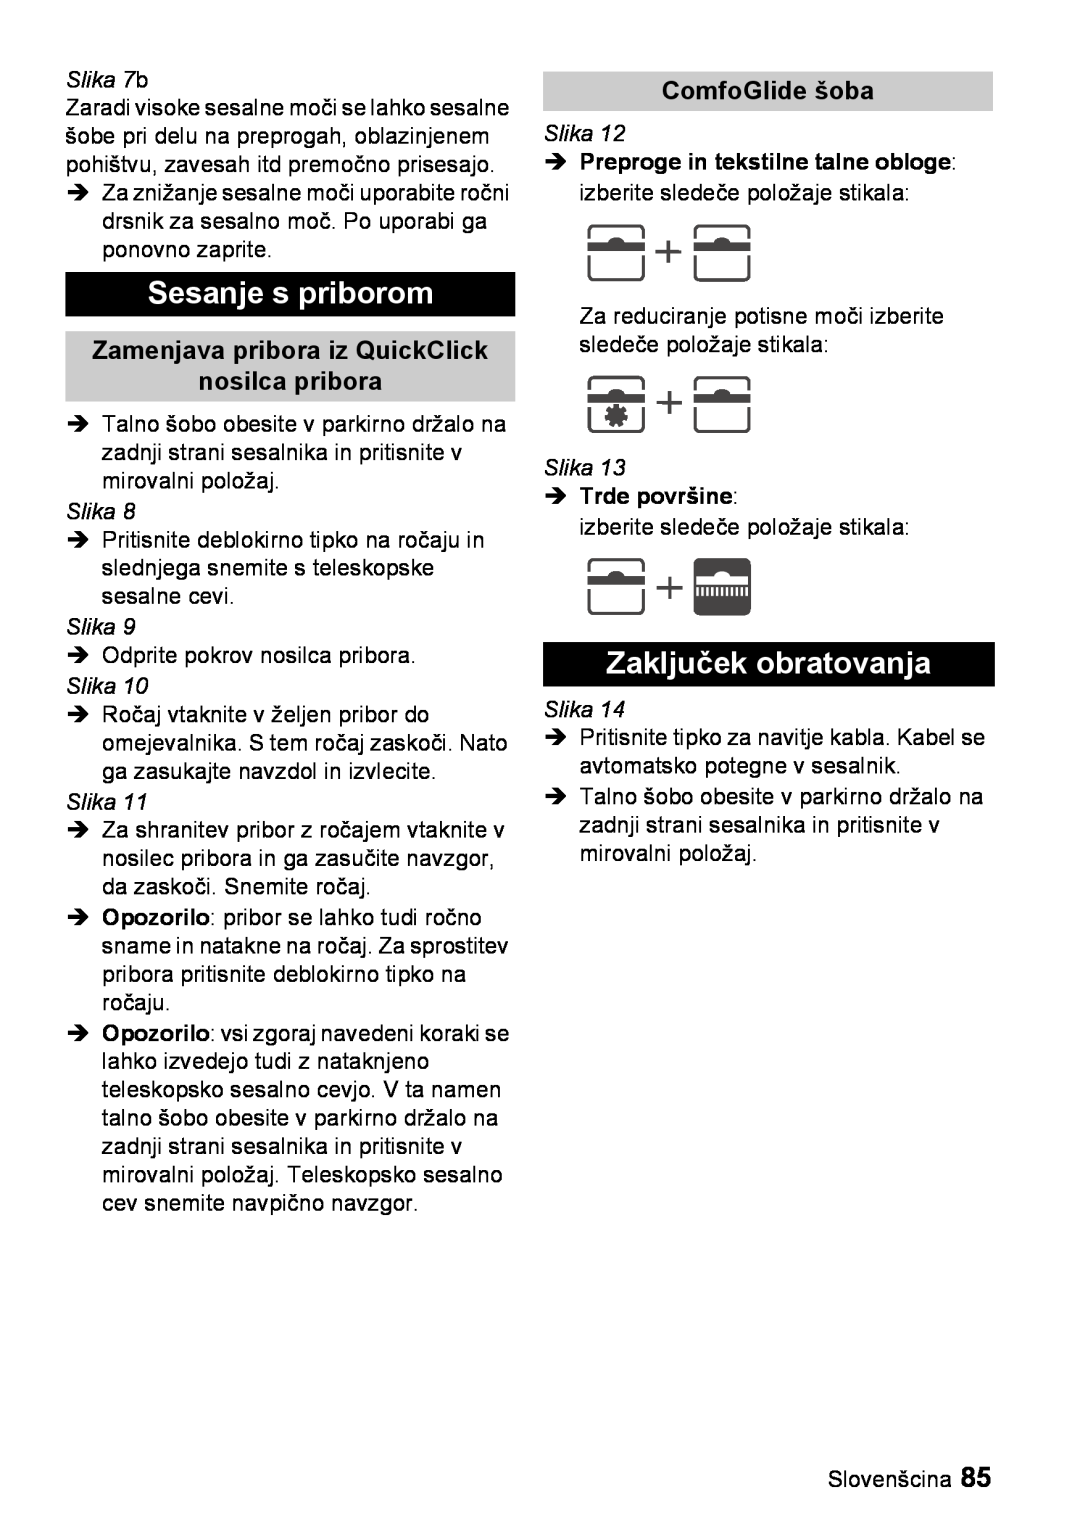 Karcher VC 6200 manual Sesanje s priborom, Zaključek obratovanja, Zamenjava pribora iz QuickClick nosilca pribora, Slika 7b 